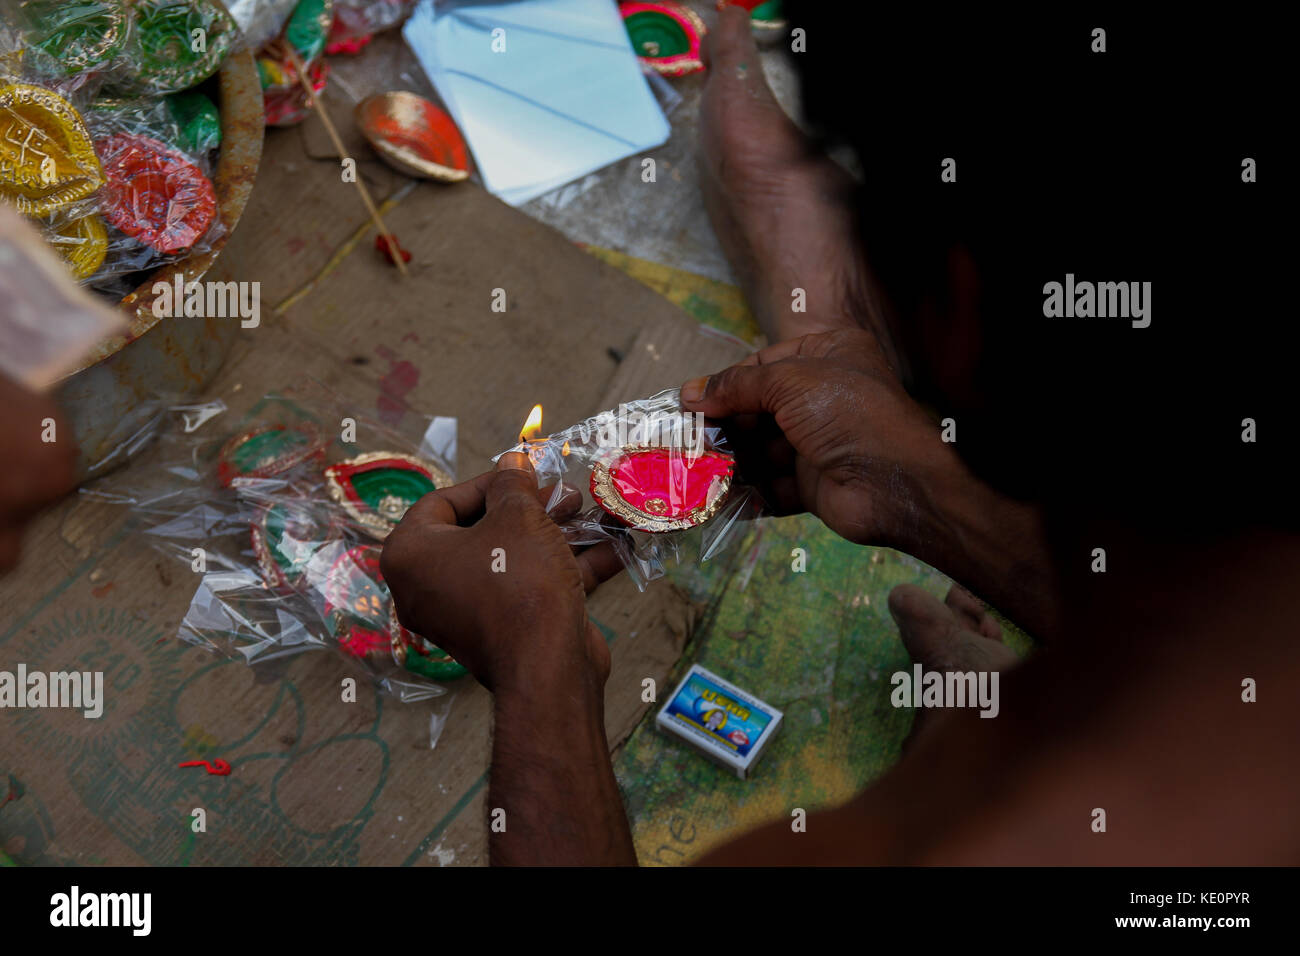 En Kolkata, India. 17 oct, 2017. La preparación está en pleno apogeo en la industria de arcilla kolkata para hacer la diya listo para usar como decoración en este diwali para iluminar su hogar. Crédito: sagnik datta/alamy live news Foto de stock